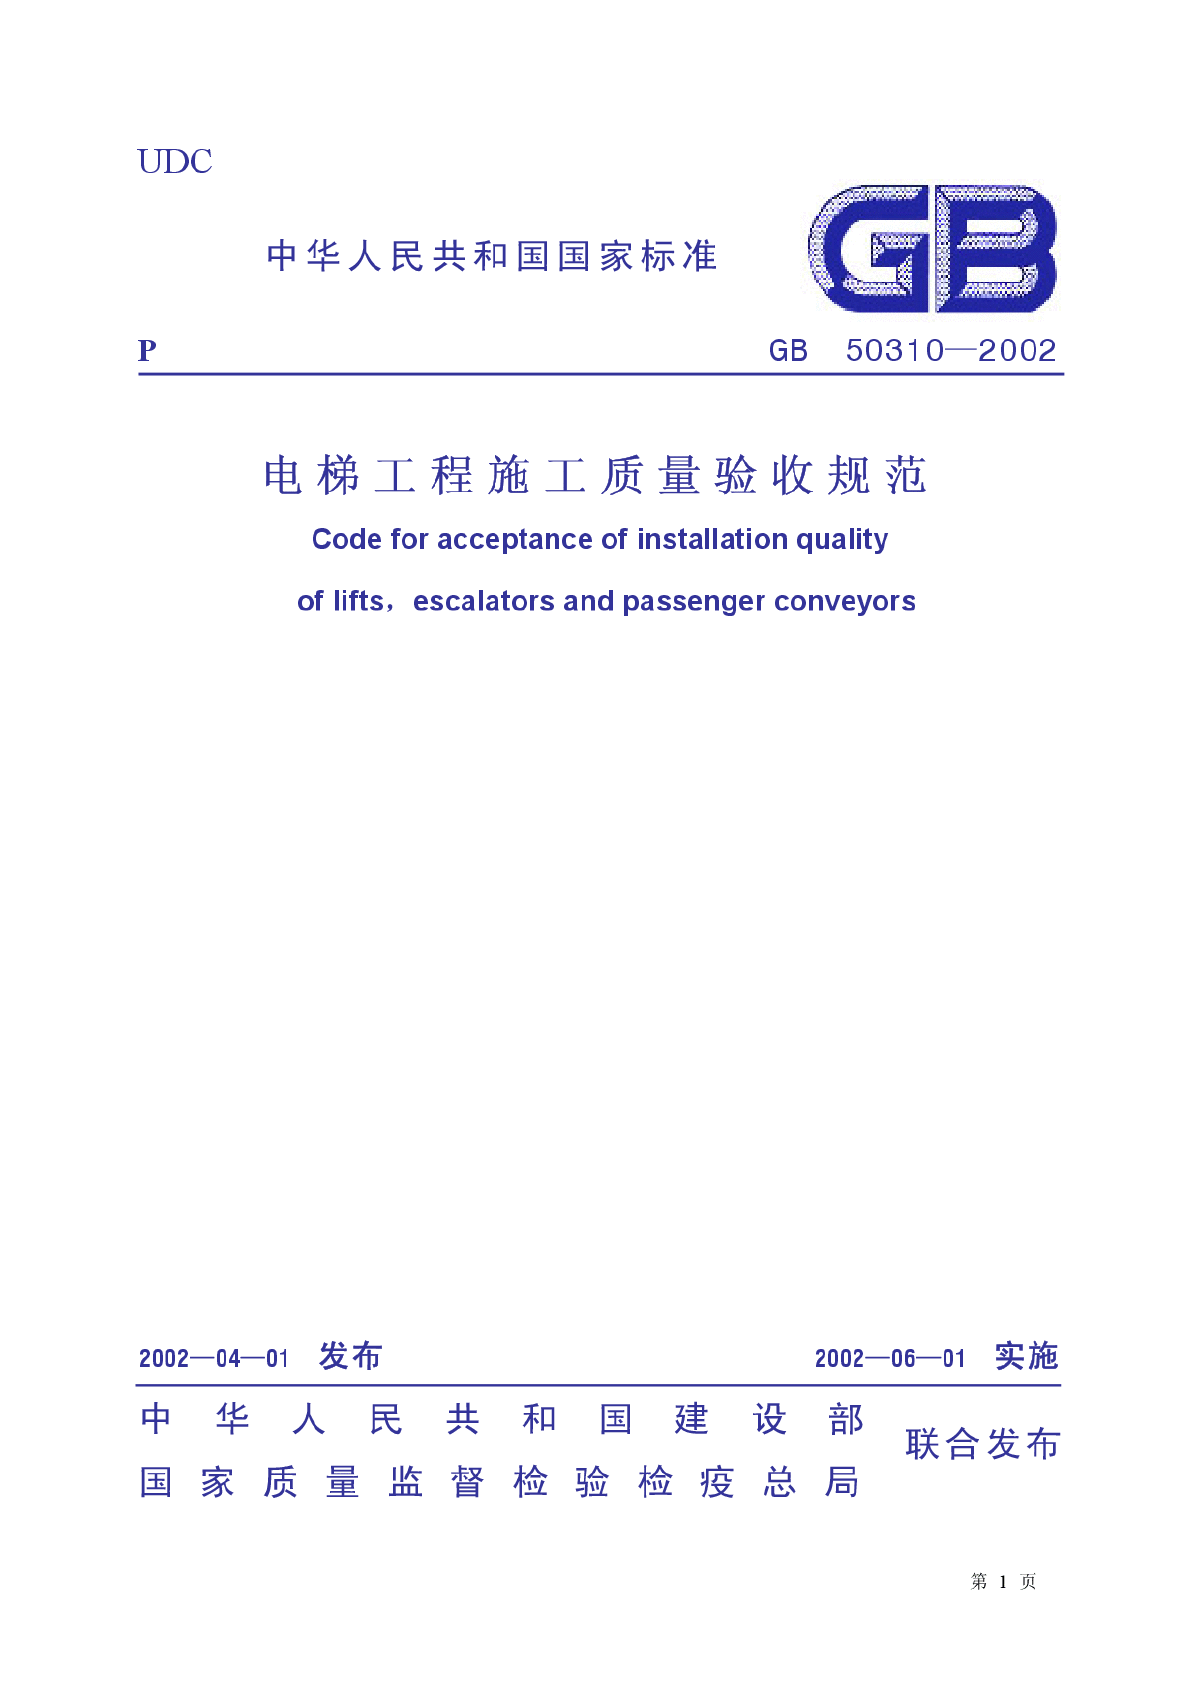 14+电梯工程施工质量验收规范+GB50310-2002.pdf